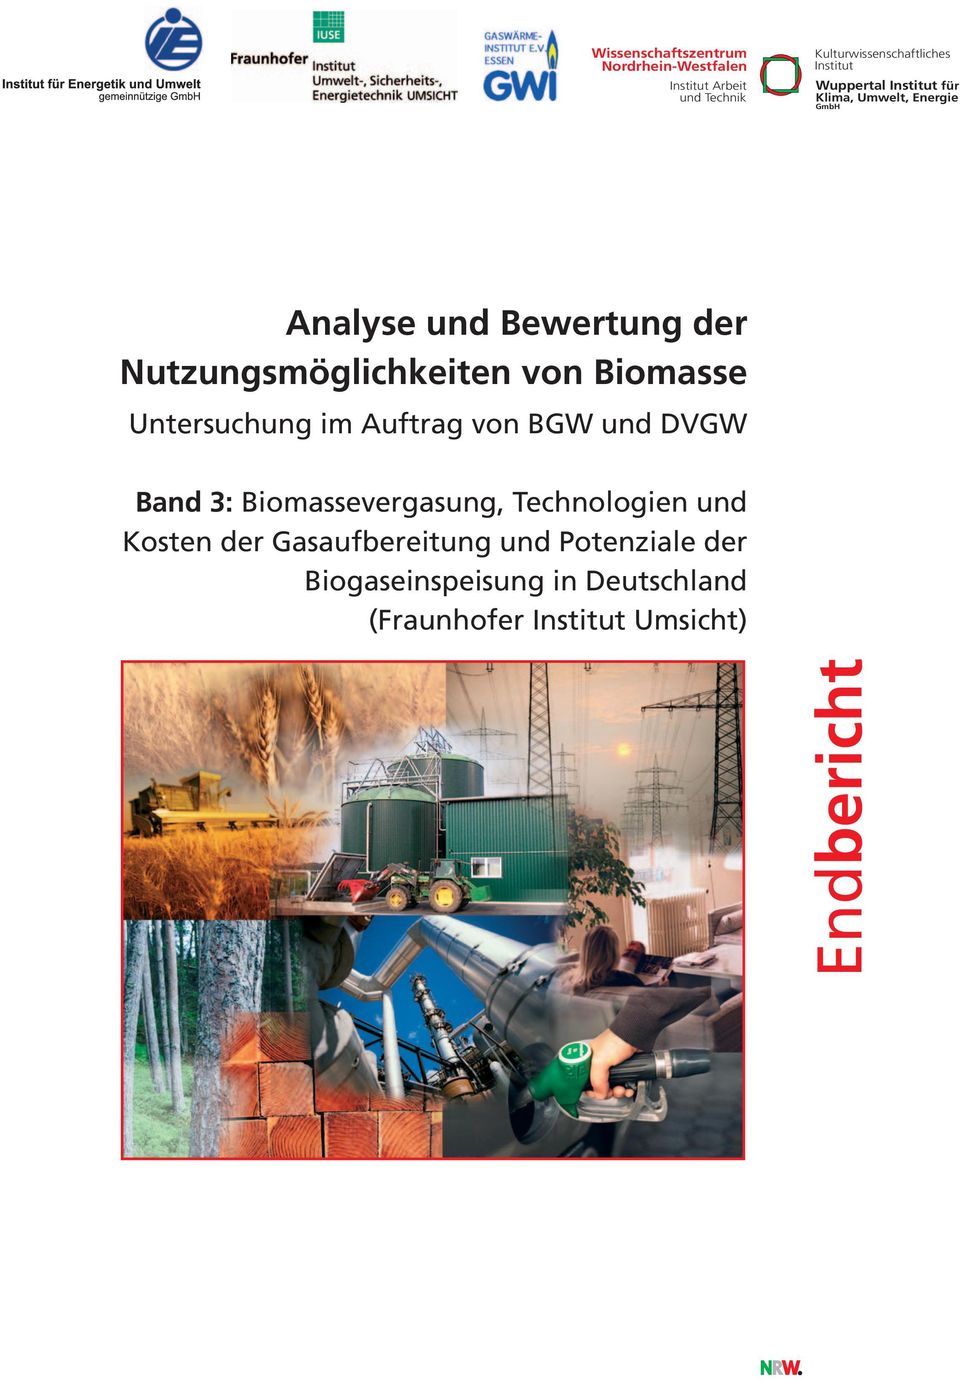 Biomasse Untersuchung im Auftrag von BGW und DVGW Band 3: Biomassevergasung, Technologien und Kosten der